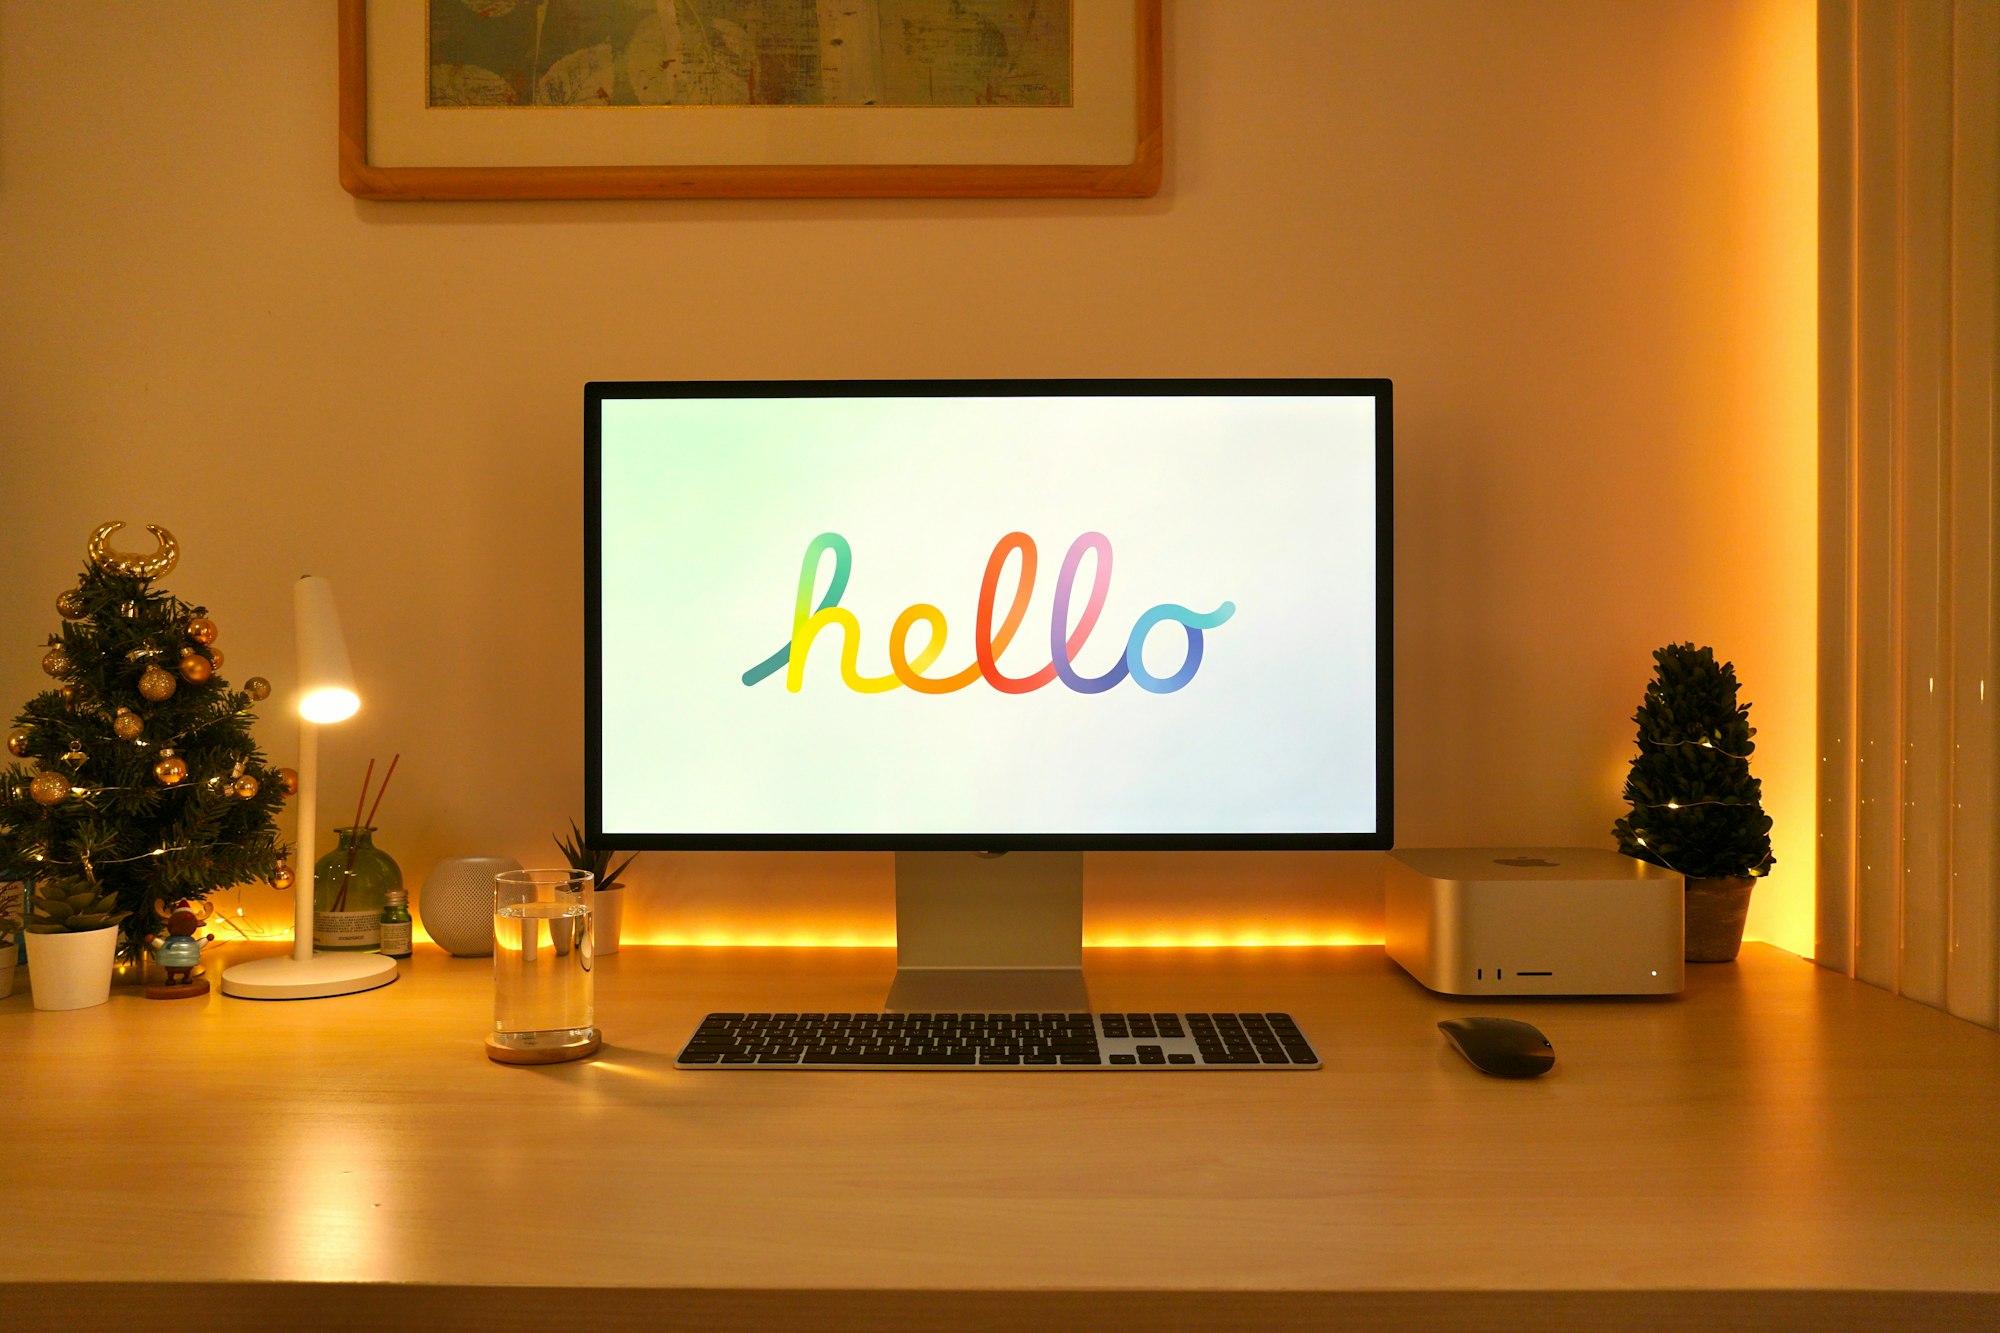 My new desk setup with Mac Studio!